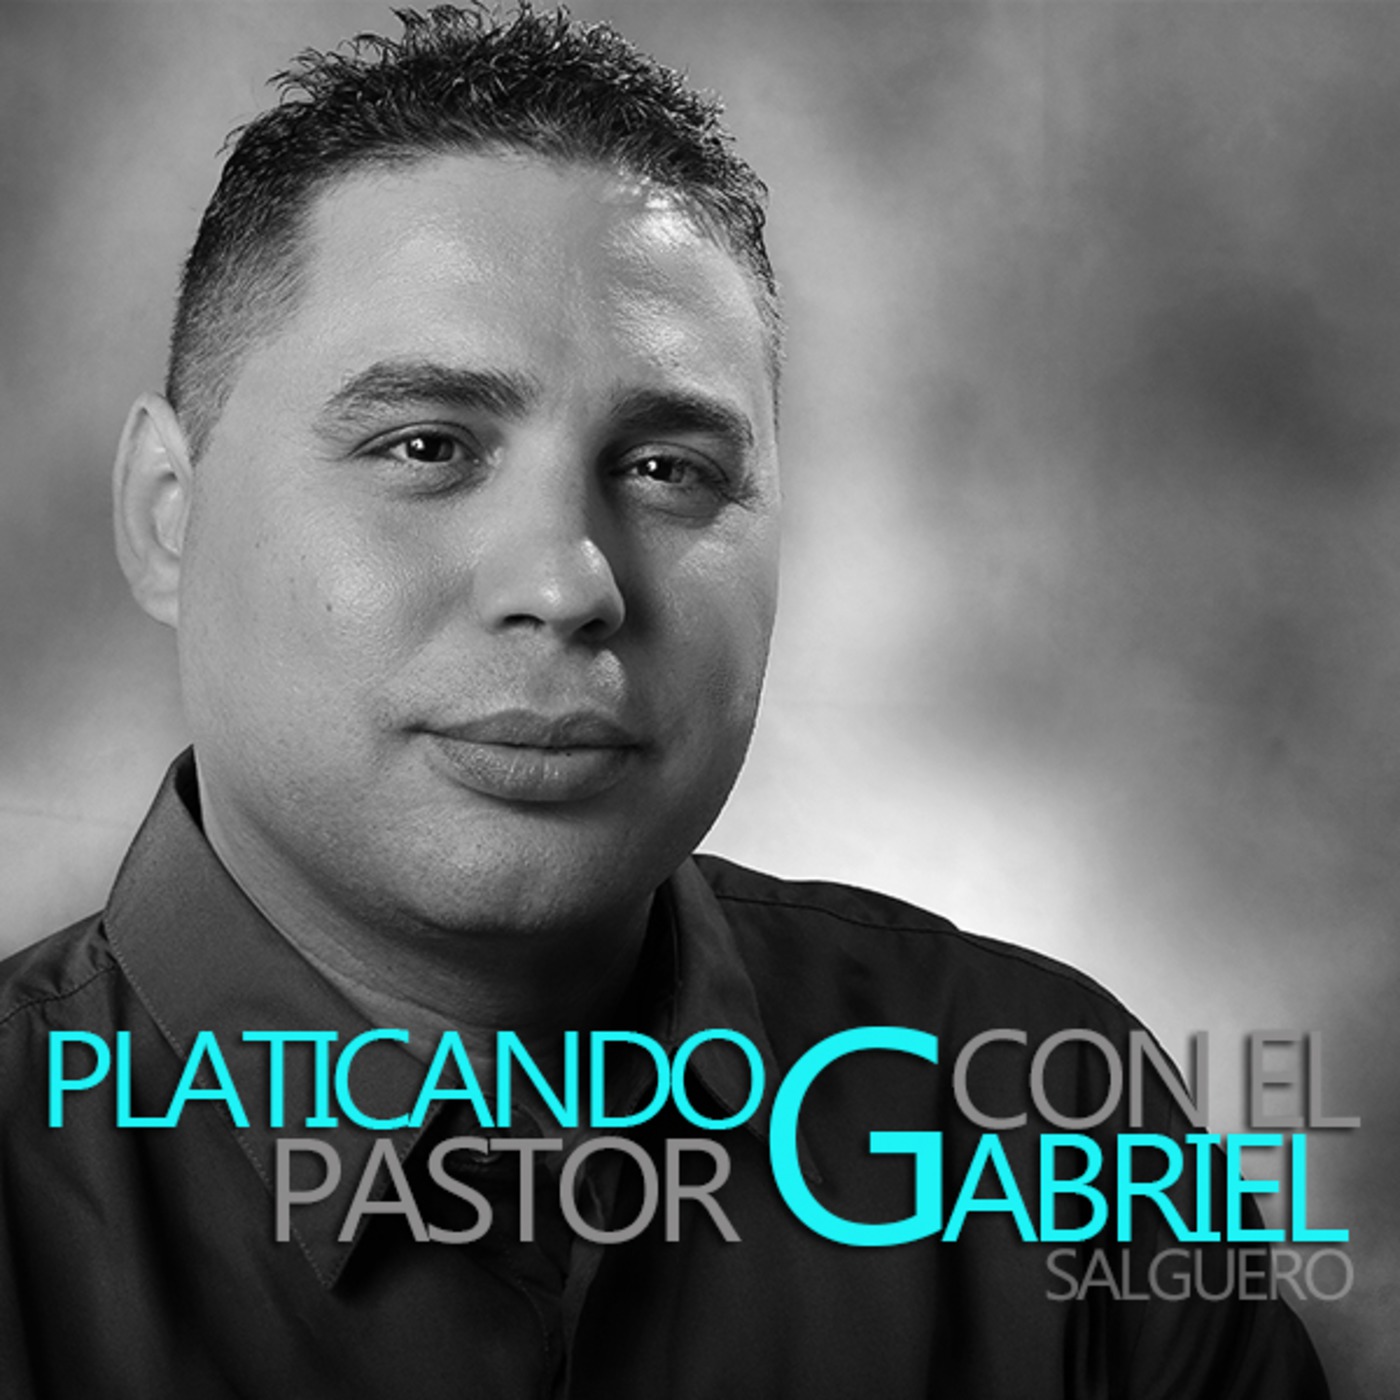 Generosidad-Platicando con el Pastor Gabriel Salguero-005S